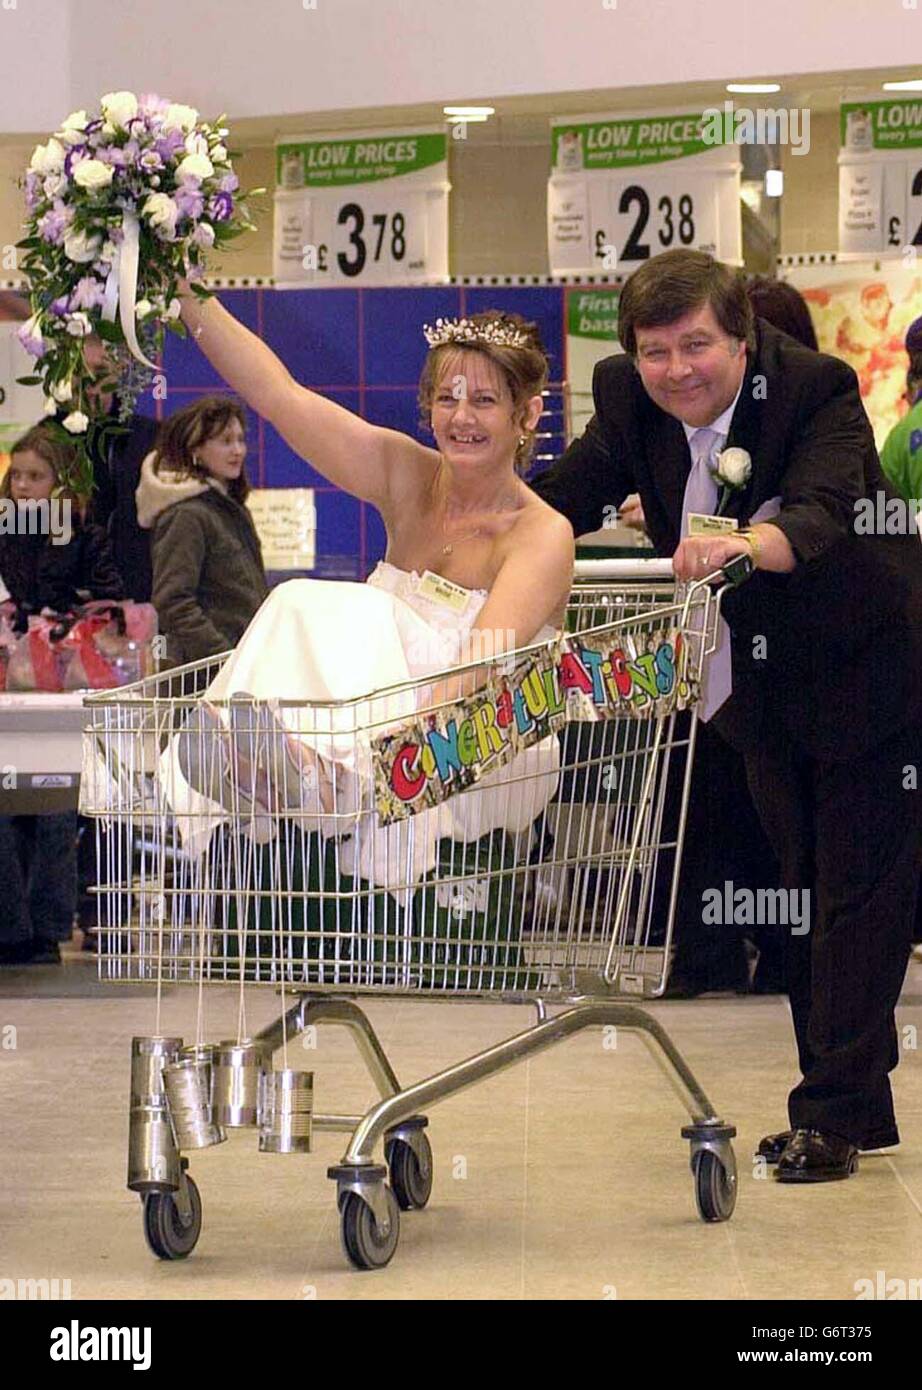 Die frisch verheirateten Pete Freeman, 54, und Jill Piggott 42, beide aus York, nachdem sie das erste Paar waren, das in einem Supermarkt heiratete, als sie den Knoten im ian Asda Supermarkt in York festmachten. Stockfoto